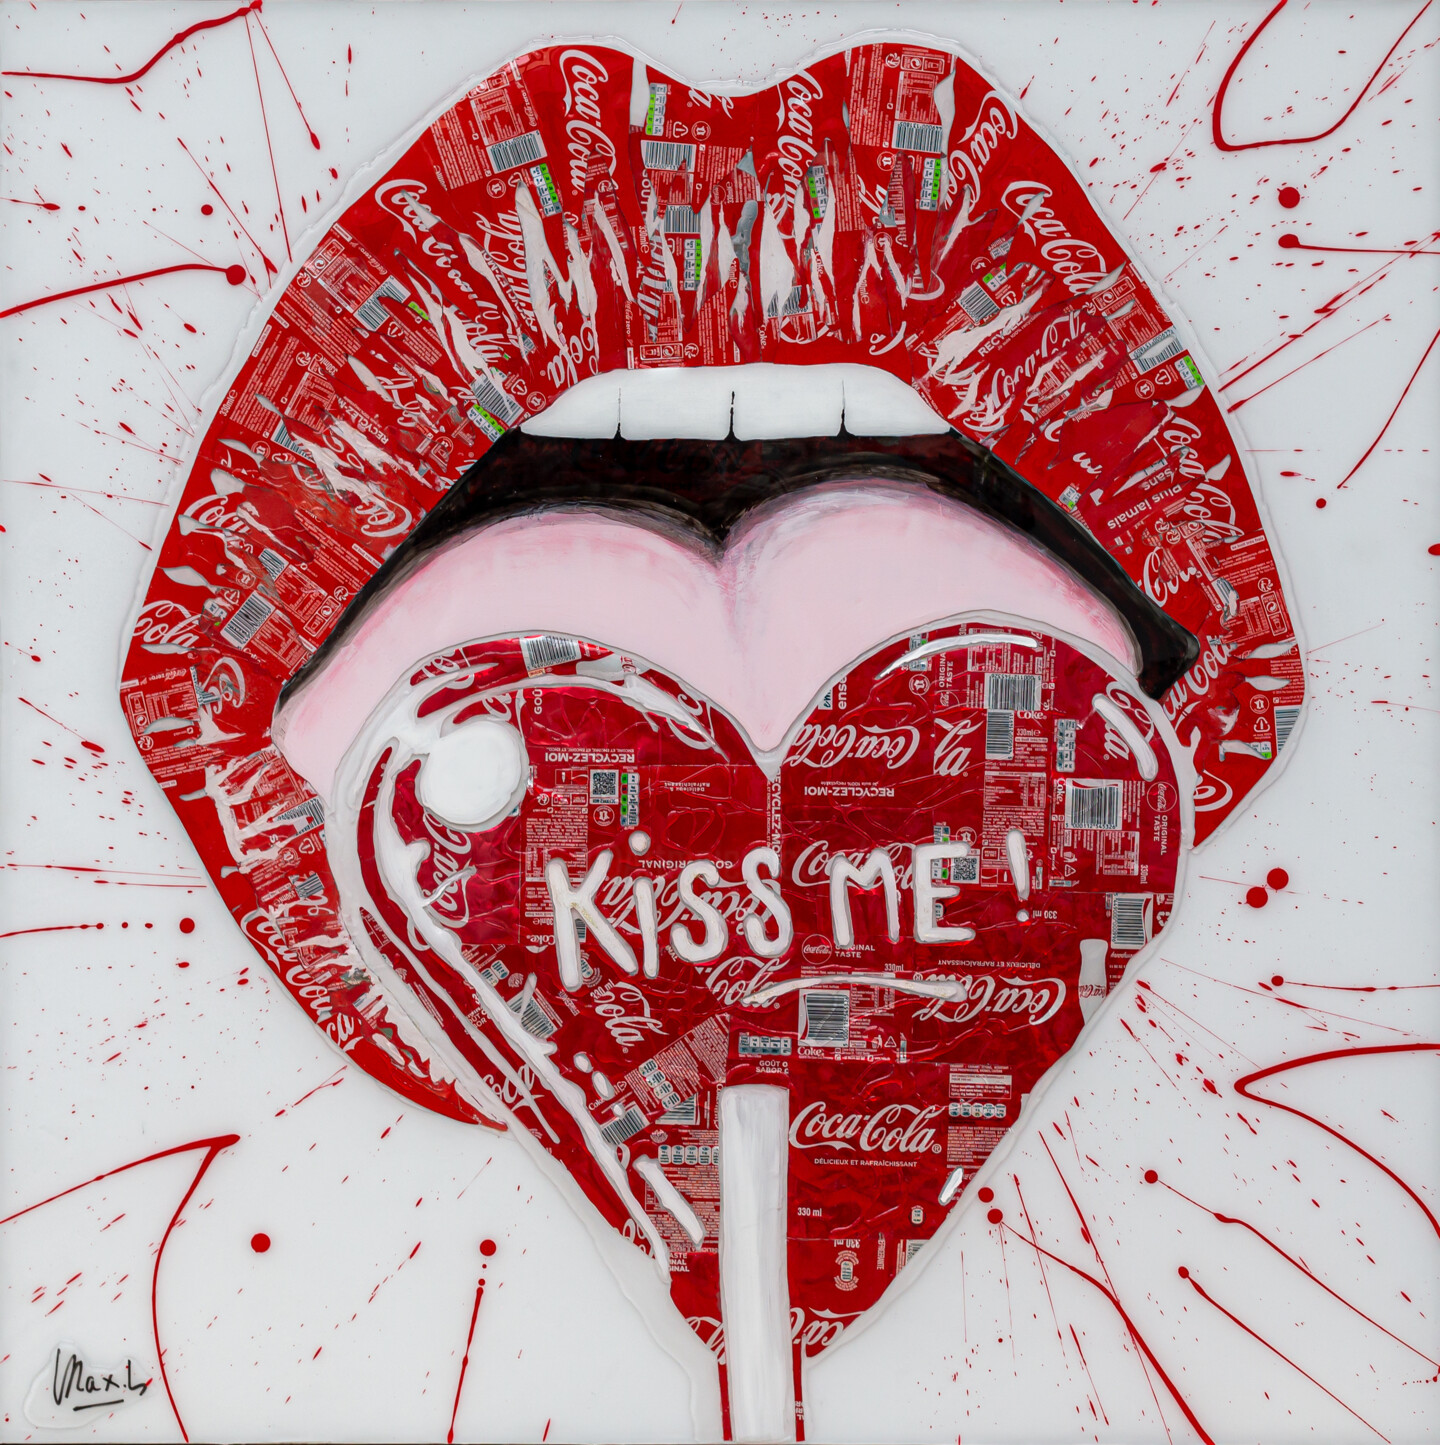 Maxl - Kiss me